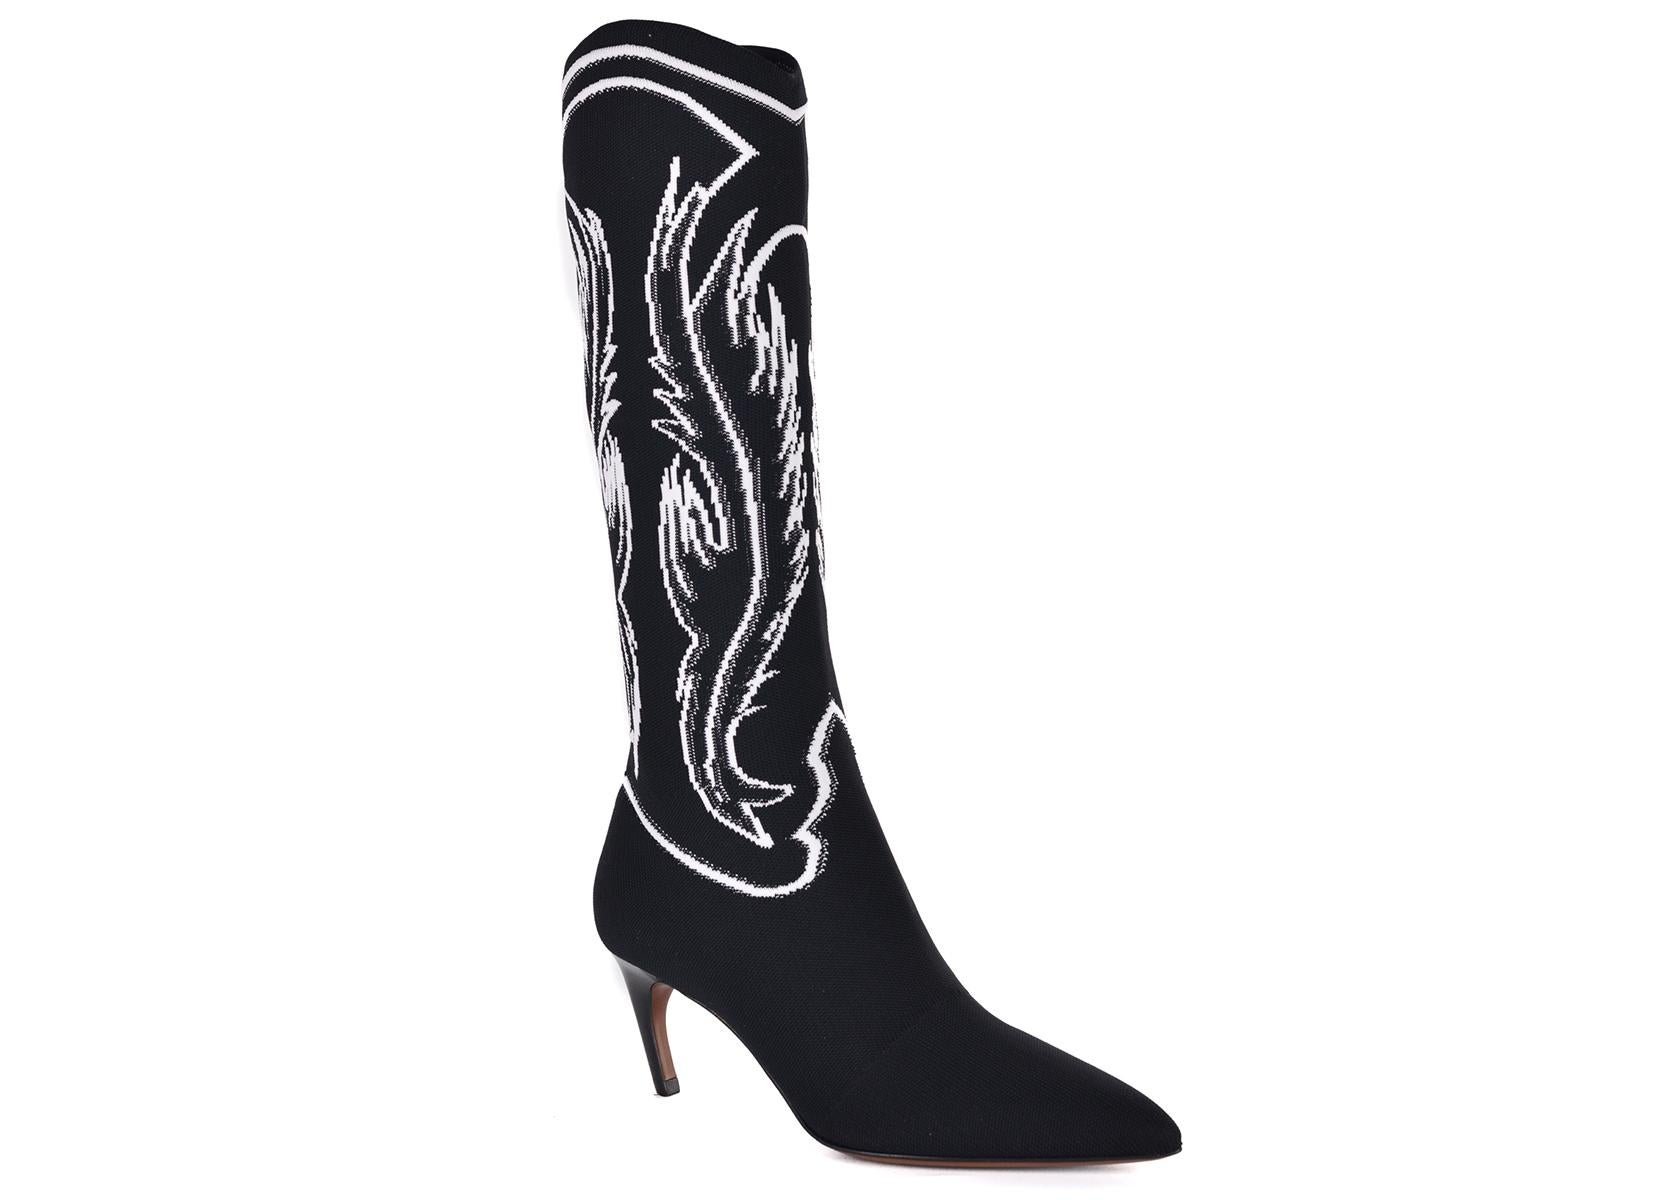 Schwarze Jacqurd Knit Mid Calf Sock Stiefel von Christian Dior. Diese Stiefel aus der Cruise 2018 Kollektion sind das perfekte Paar Schuhe für einen gehobenen Streetstyle-Look. Kombinieren Sie dazu eine schwarze Jeans und eine schicke weiße Bluse